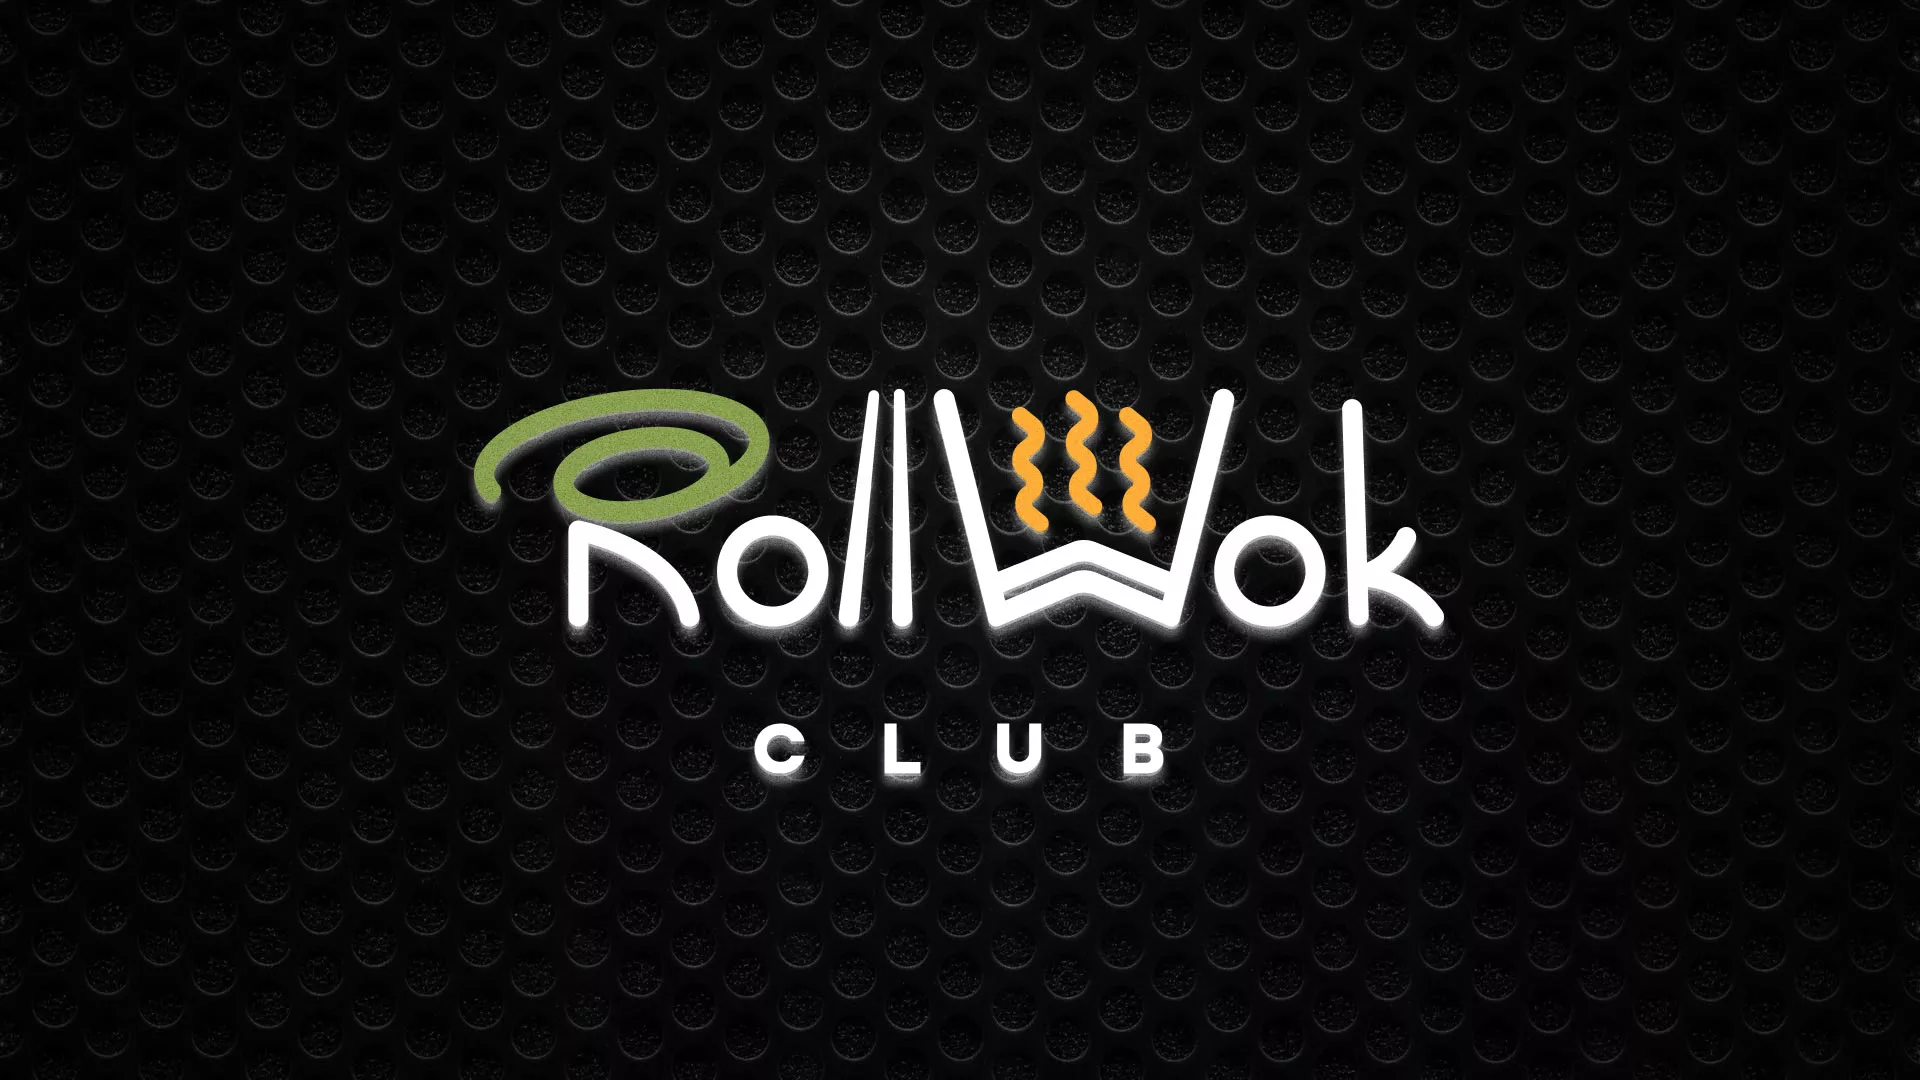 Брендирование торговых точек суши-бара «Roll Wok Club» в Каргополе